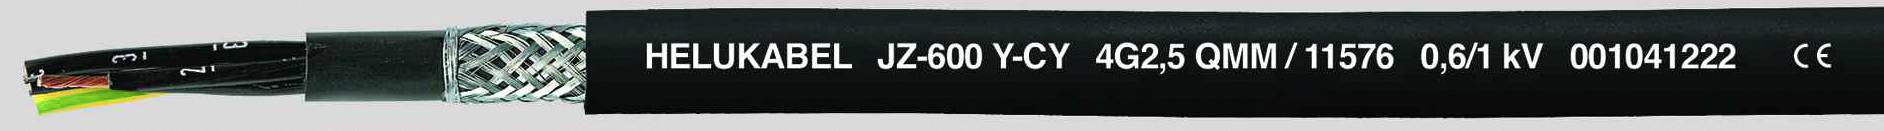 HELUKABEL JZ-600-Y-CY Steuerleitung 3 G 1 mm² Schwarz 11517-500 500 m